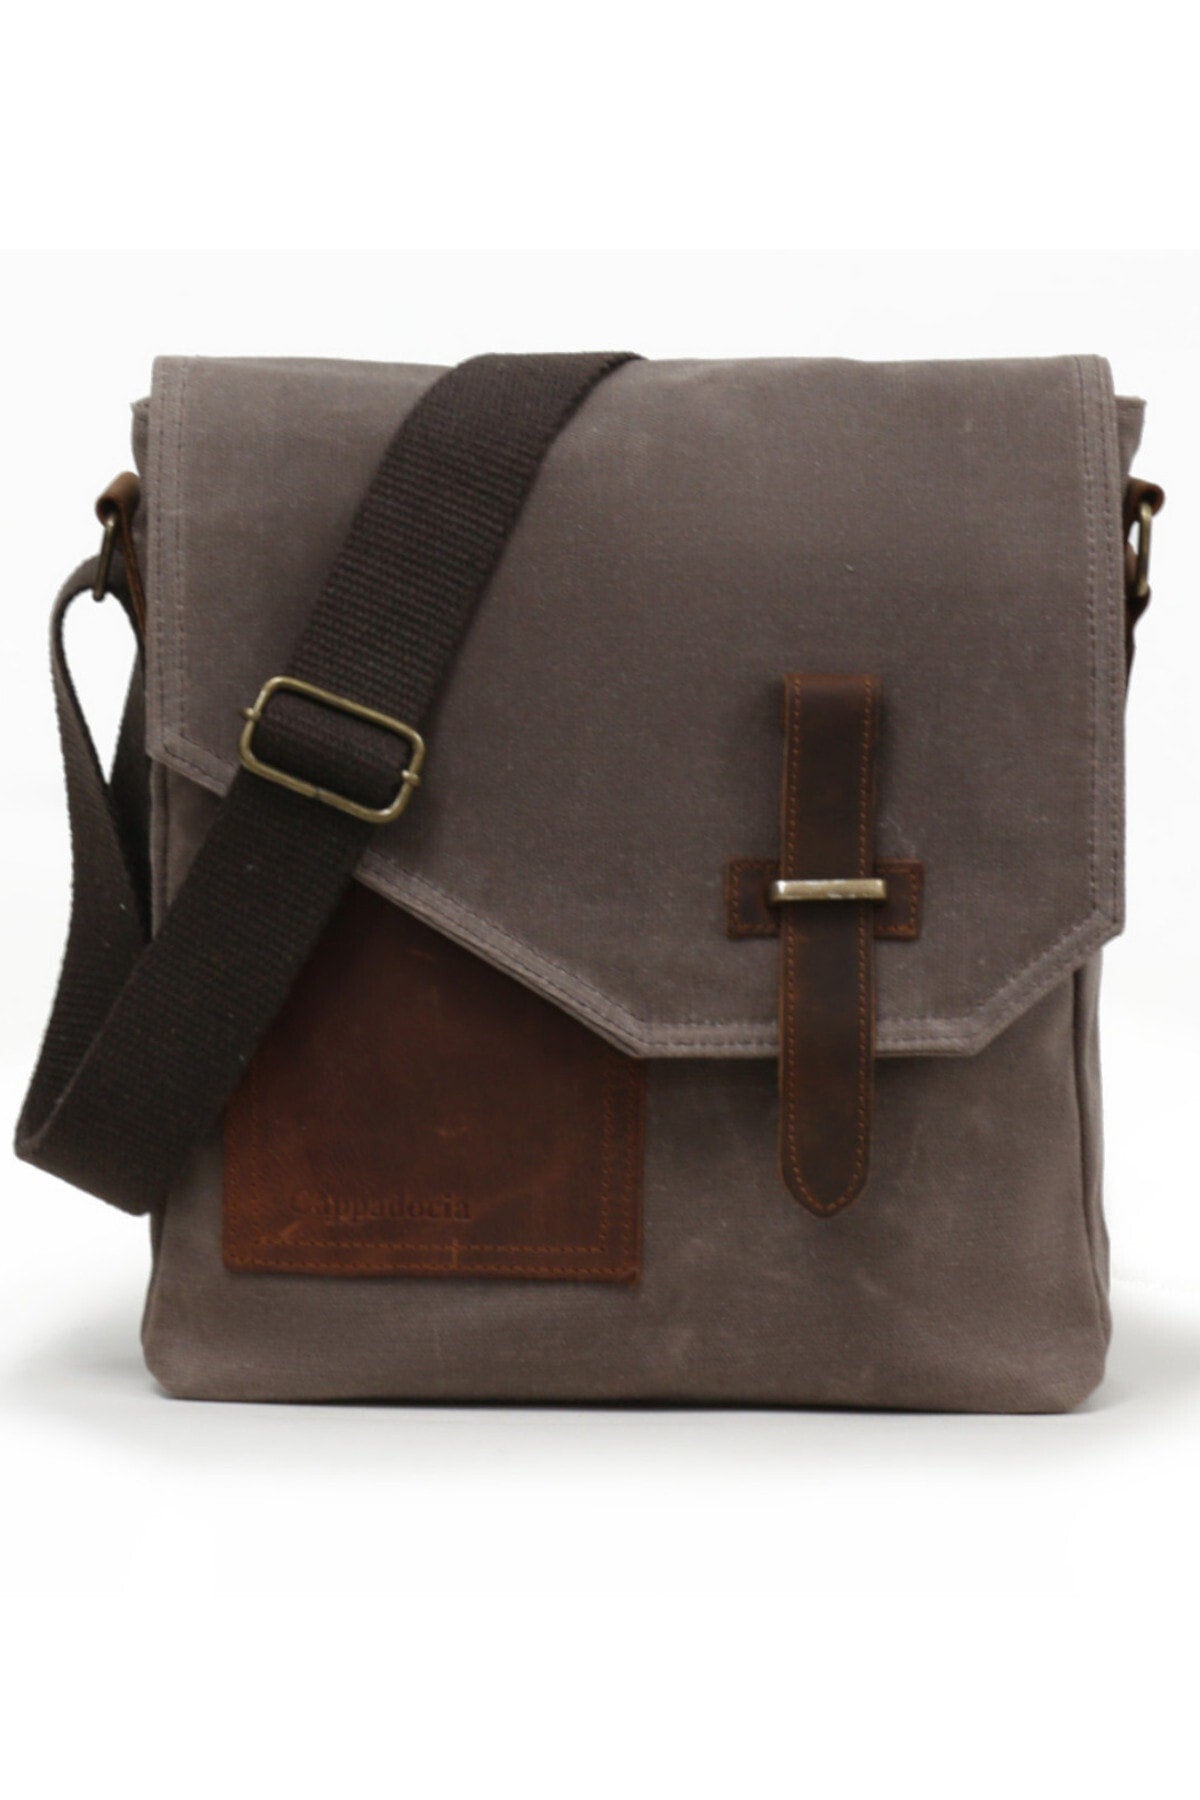 Cappadocia Genuine Leather 4035 Teos Waterproof Brown Postman Shoulder Waxed Canvas Laptop Bag